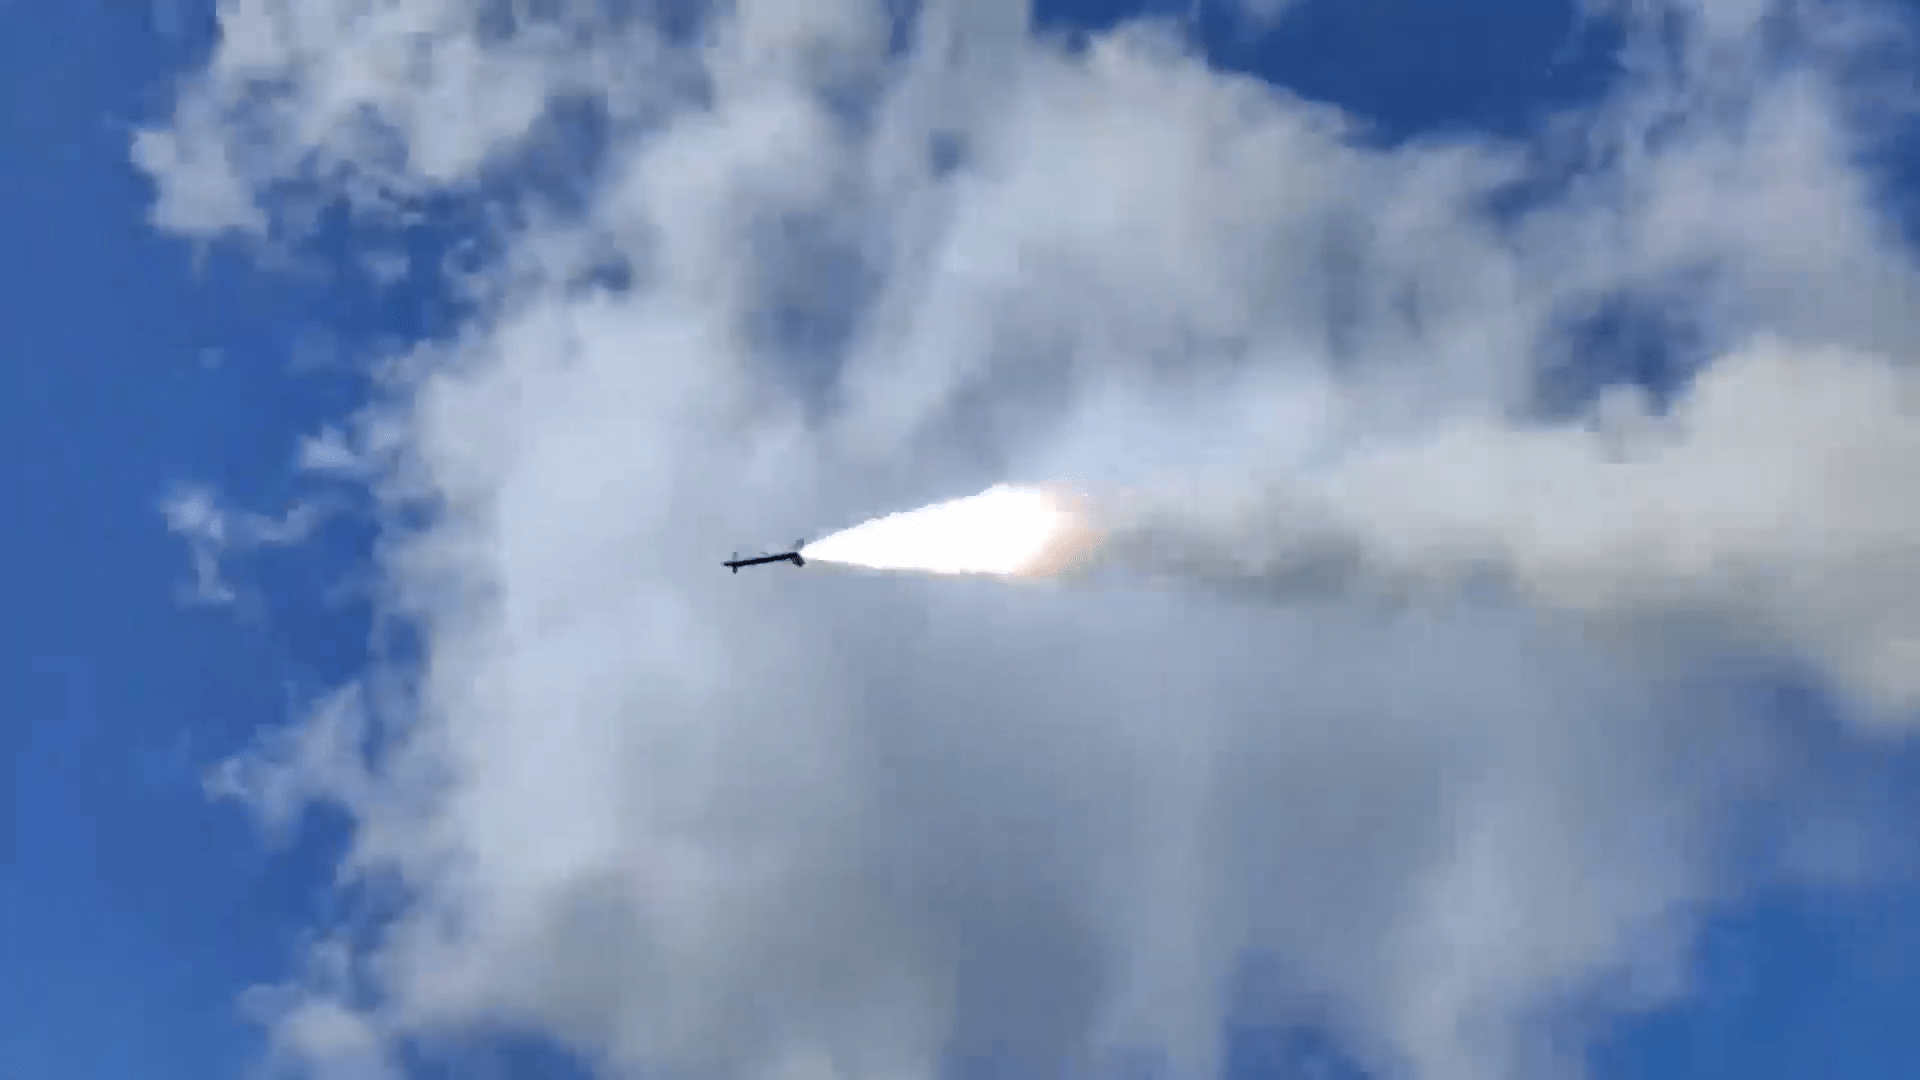 Украинские зенитные ракеты С-200 уничтожены в небе над Азовским морем